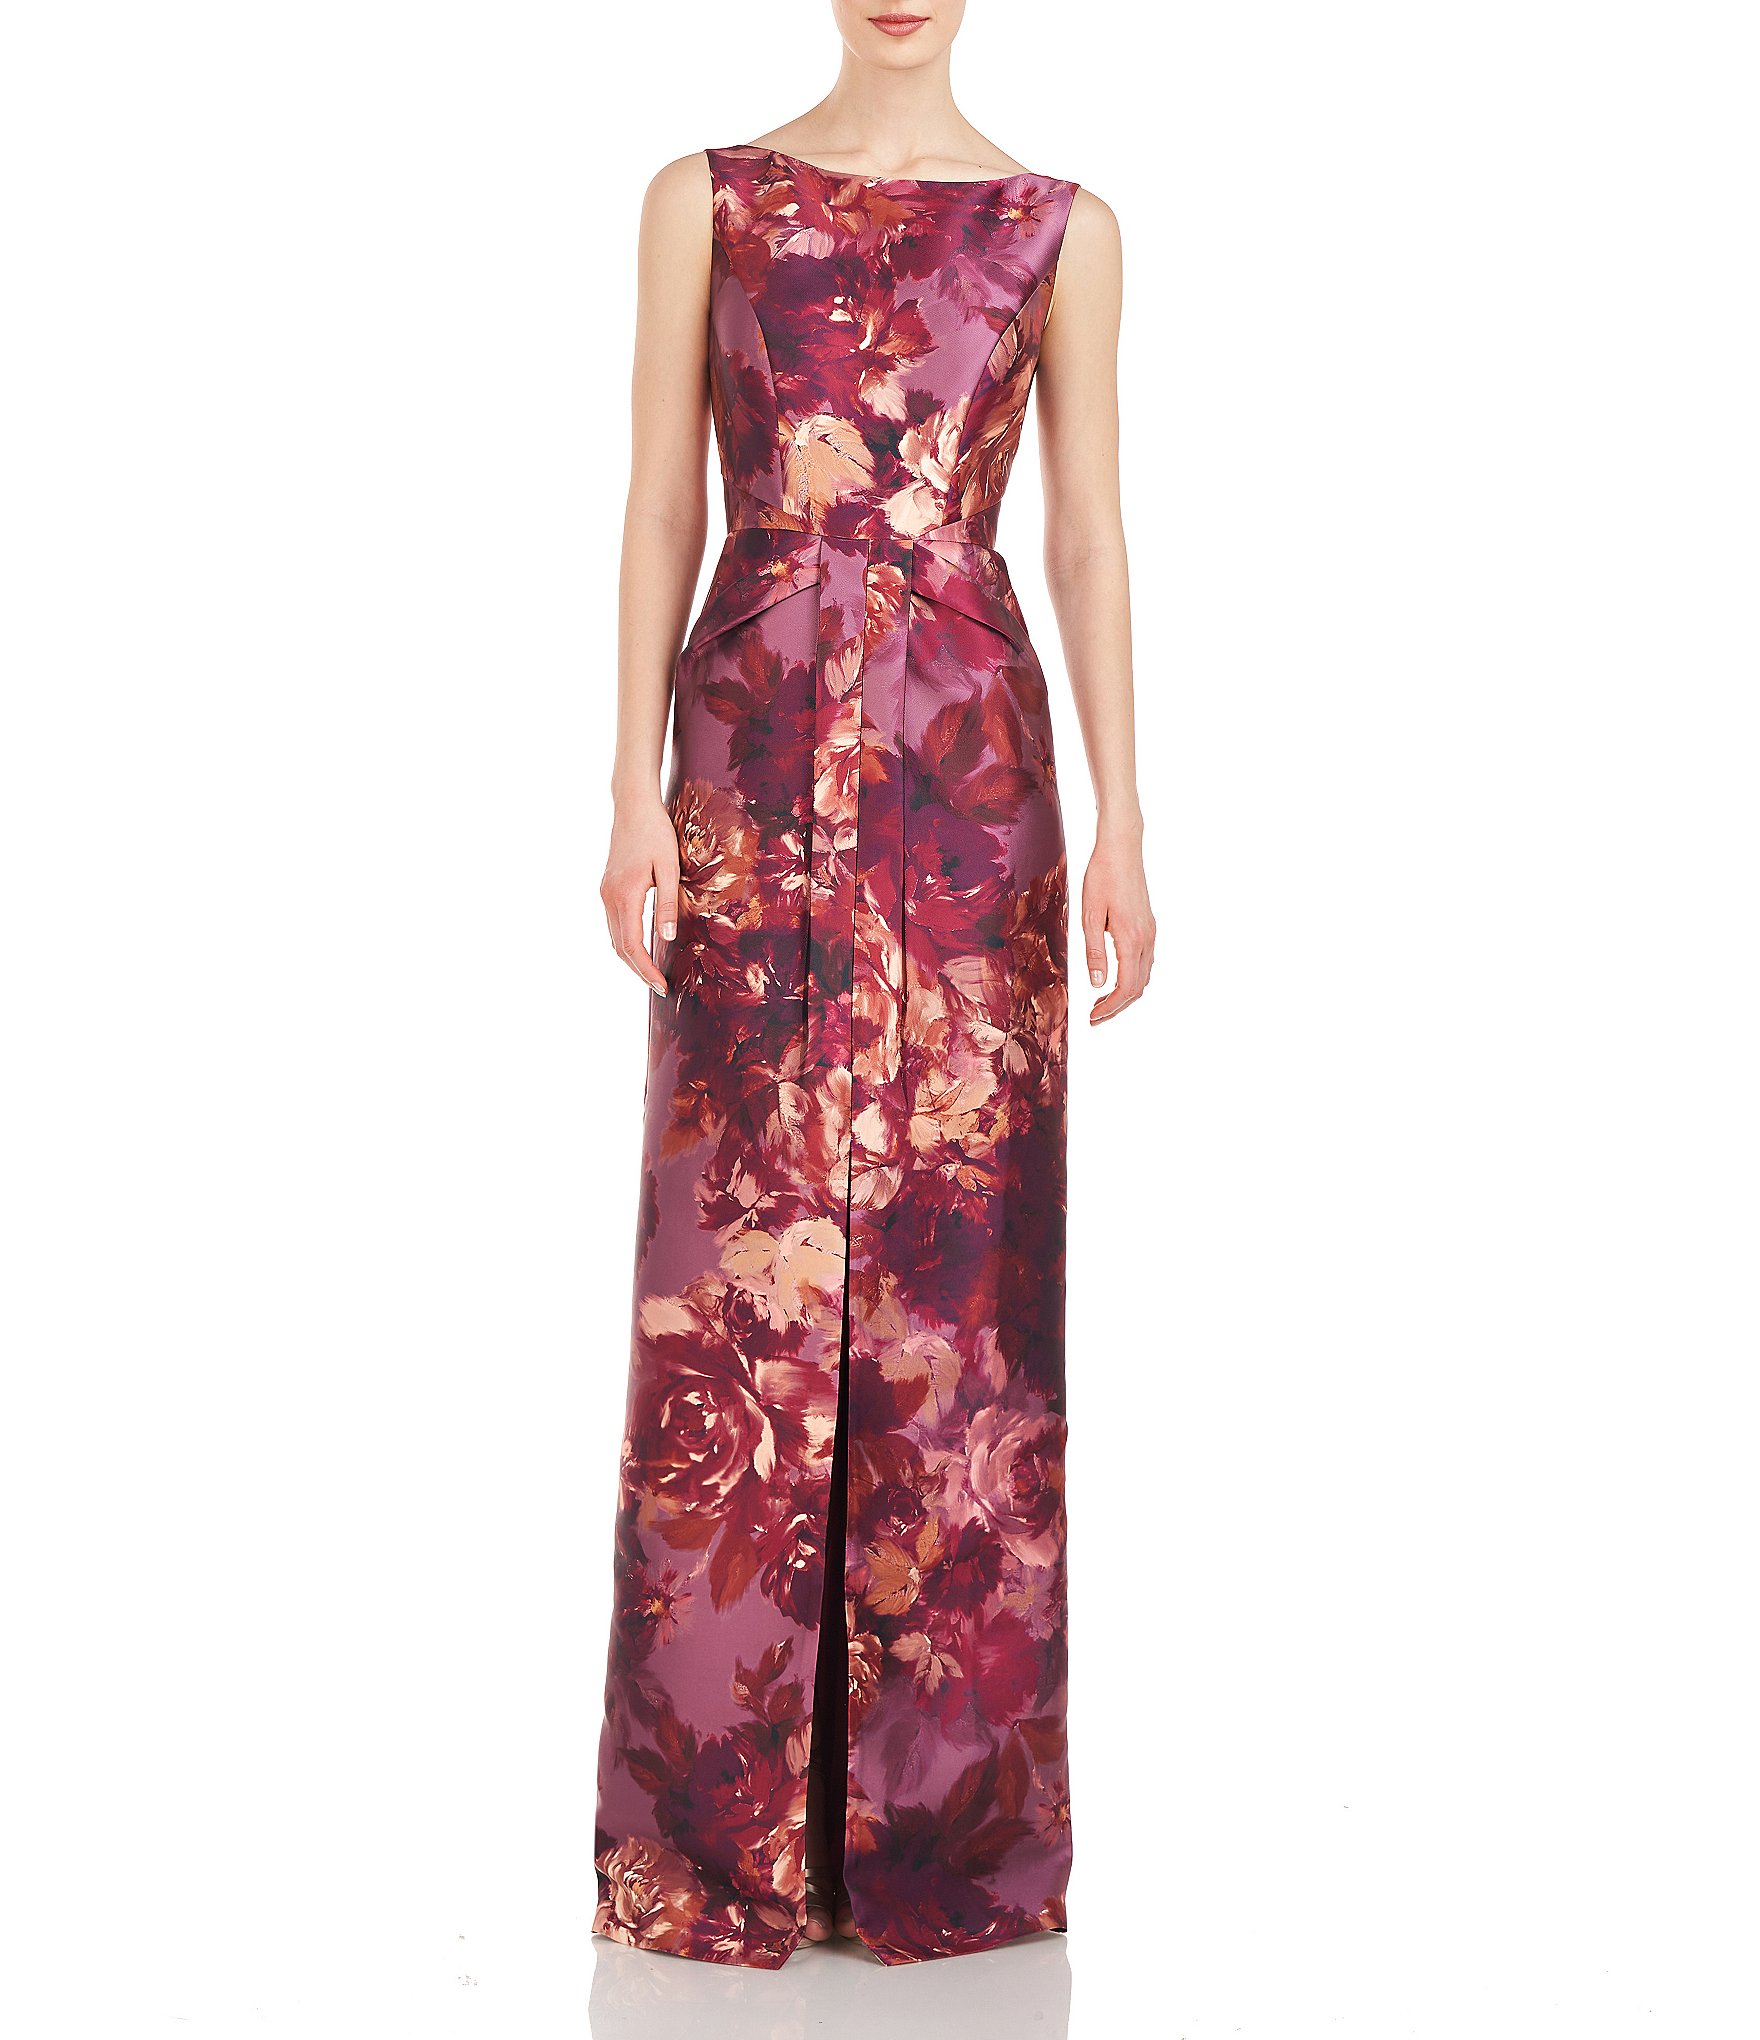 teal a: Women's Formal Dresses & Evening Gowns | Dillard's